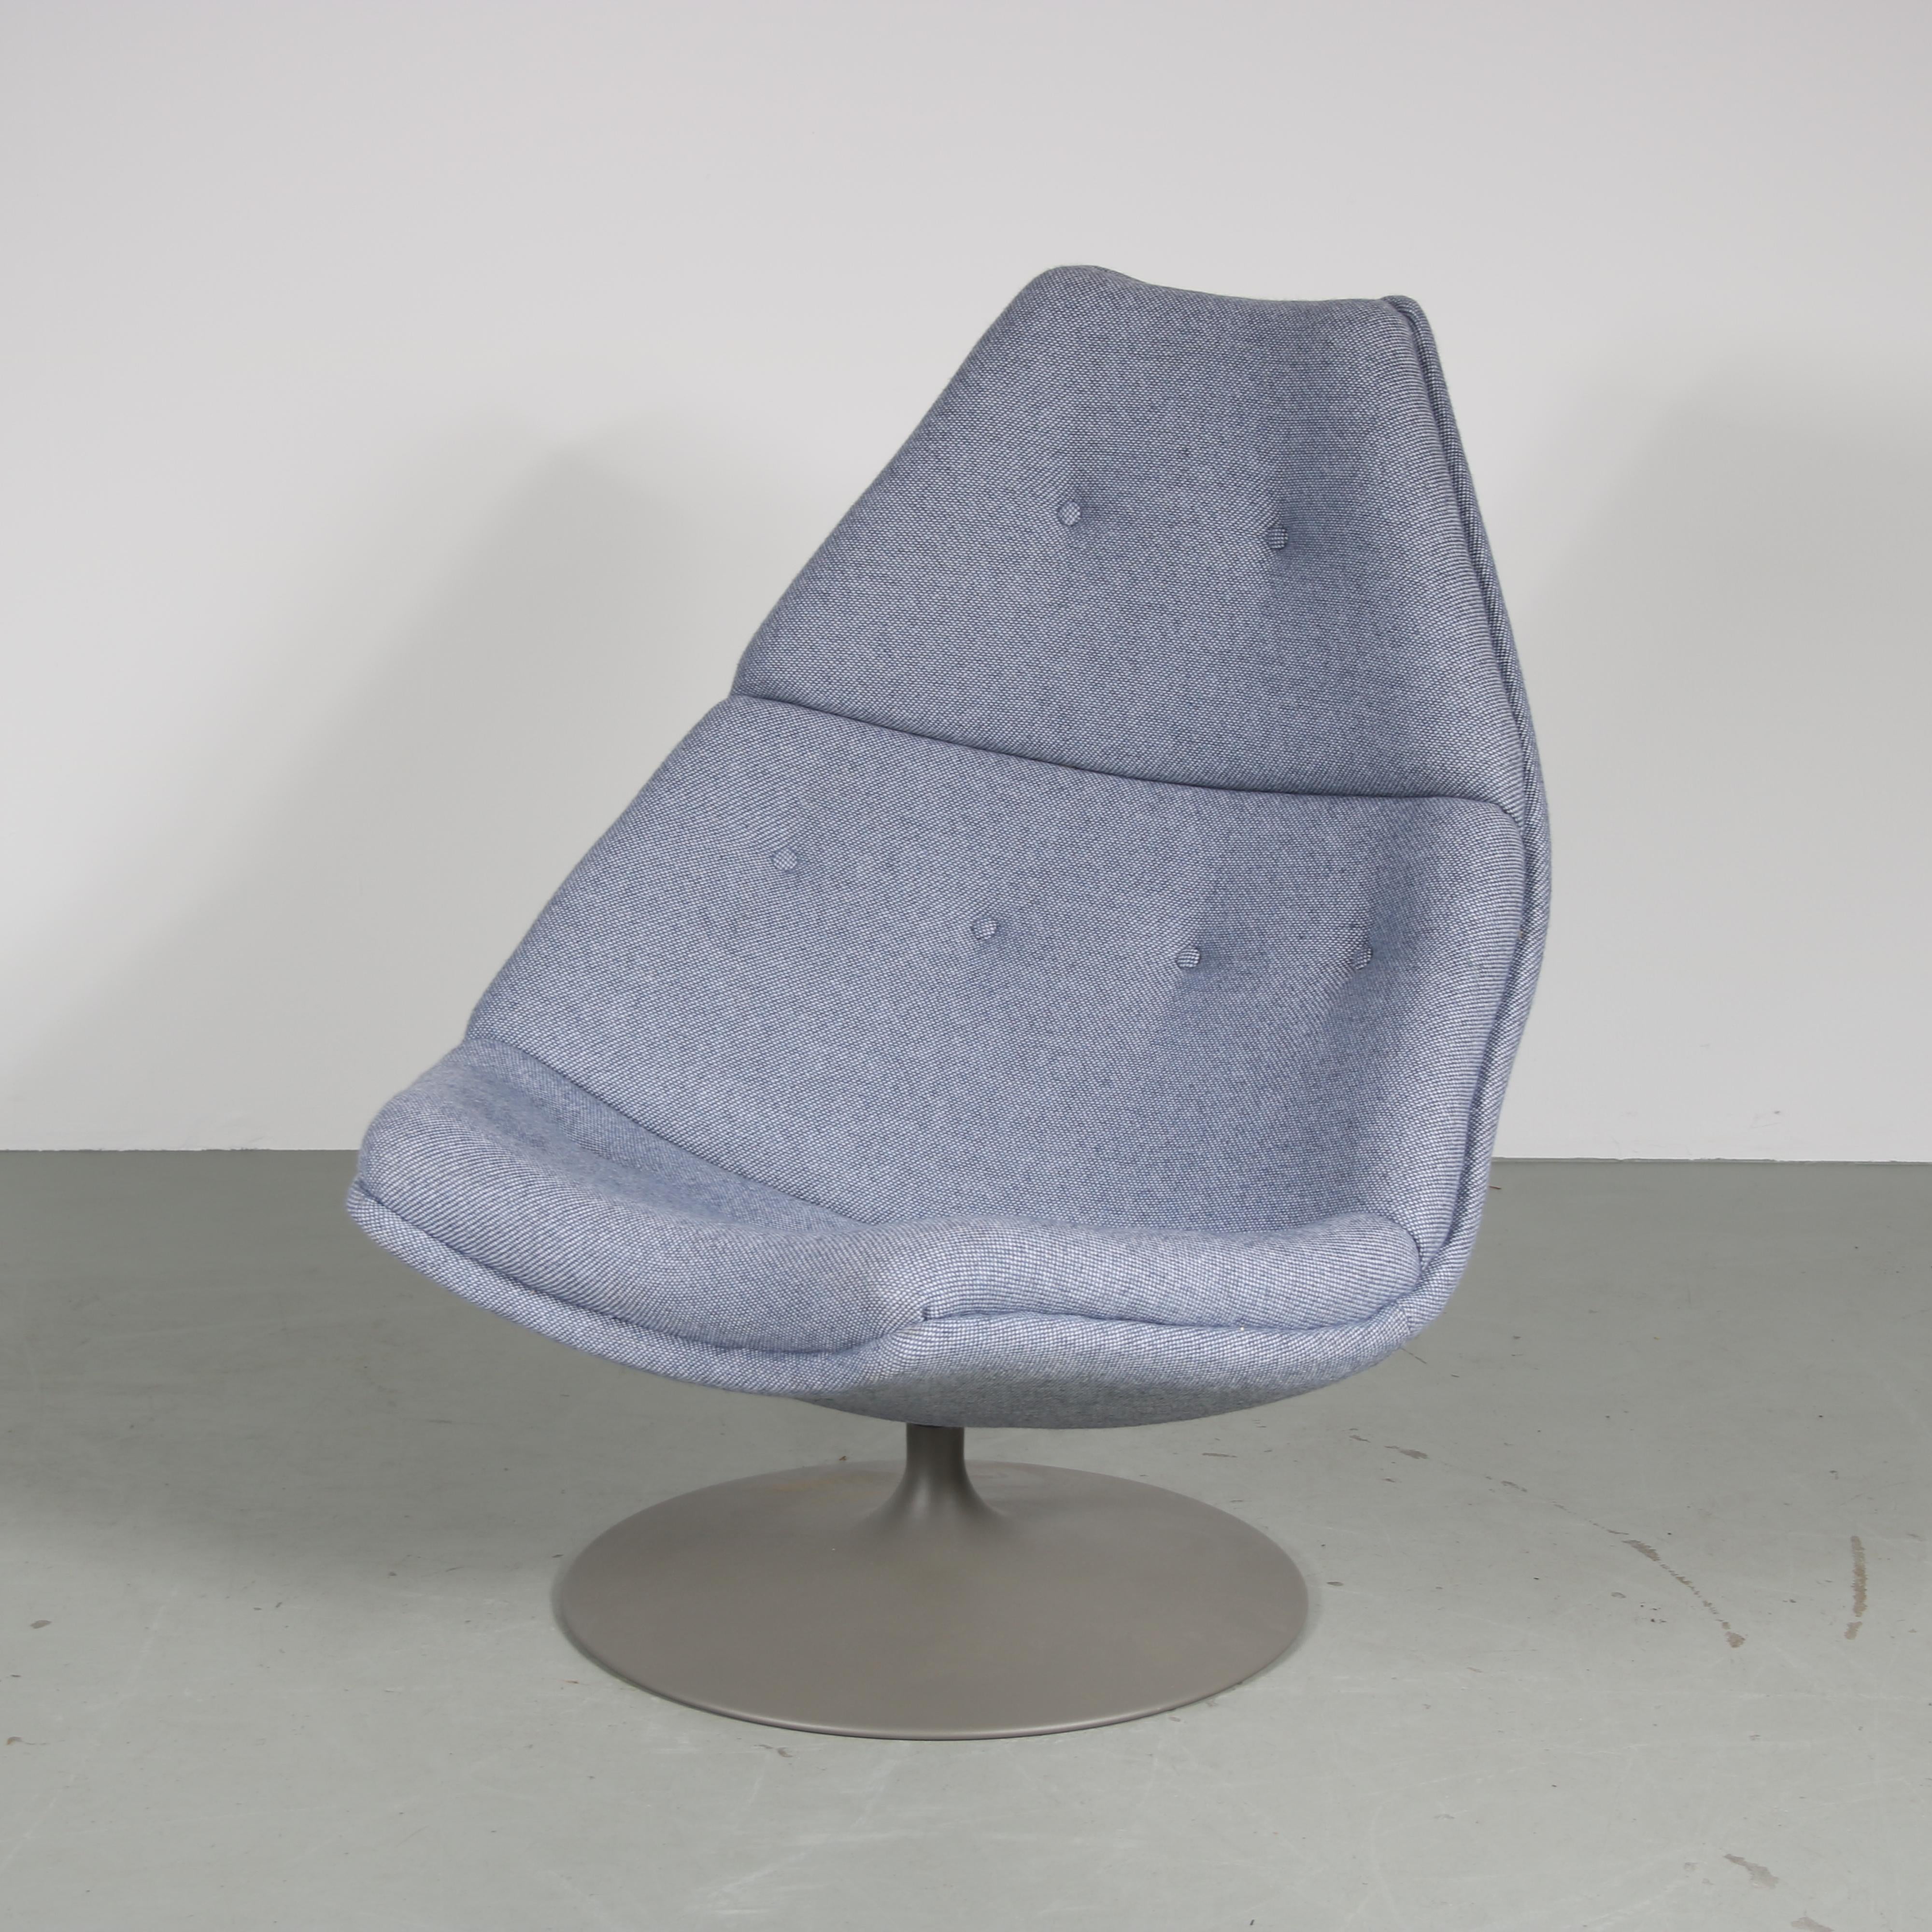 Ein schöner Loungesessel, entworfen von Geoffrey Harcourt, hergestellt von Artifort in den Niederlanden um 1960.

Dieses ikonische Stück, Modell 588, ist ein Designstück aus der Mitte des Jahrhunderts mit hohem Wiedererkennungswert! Der große,